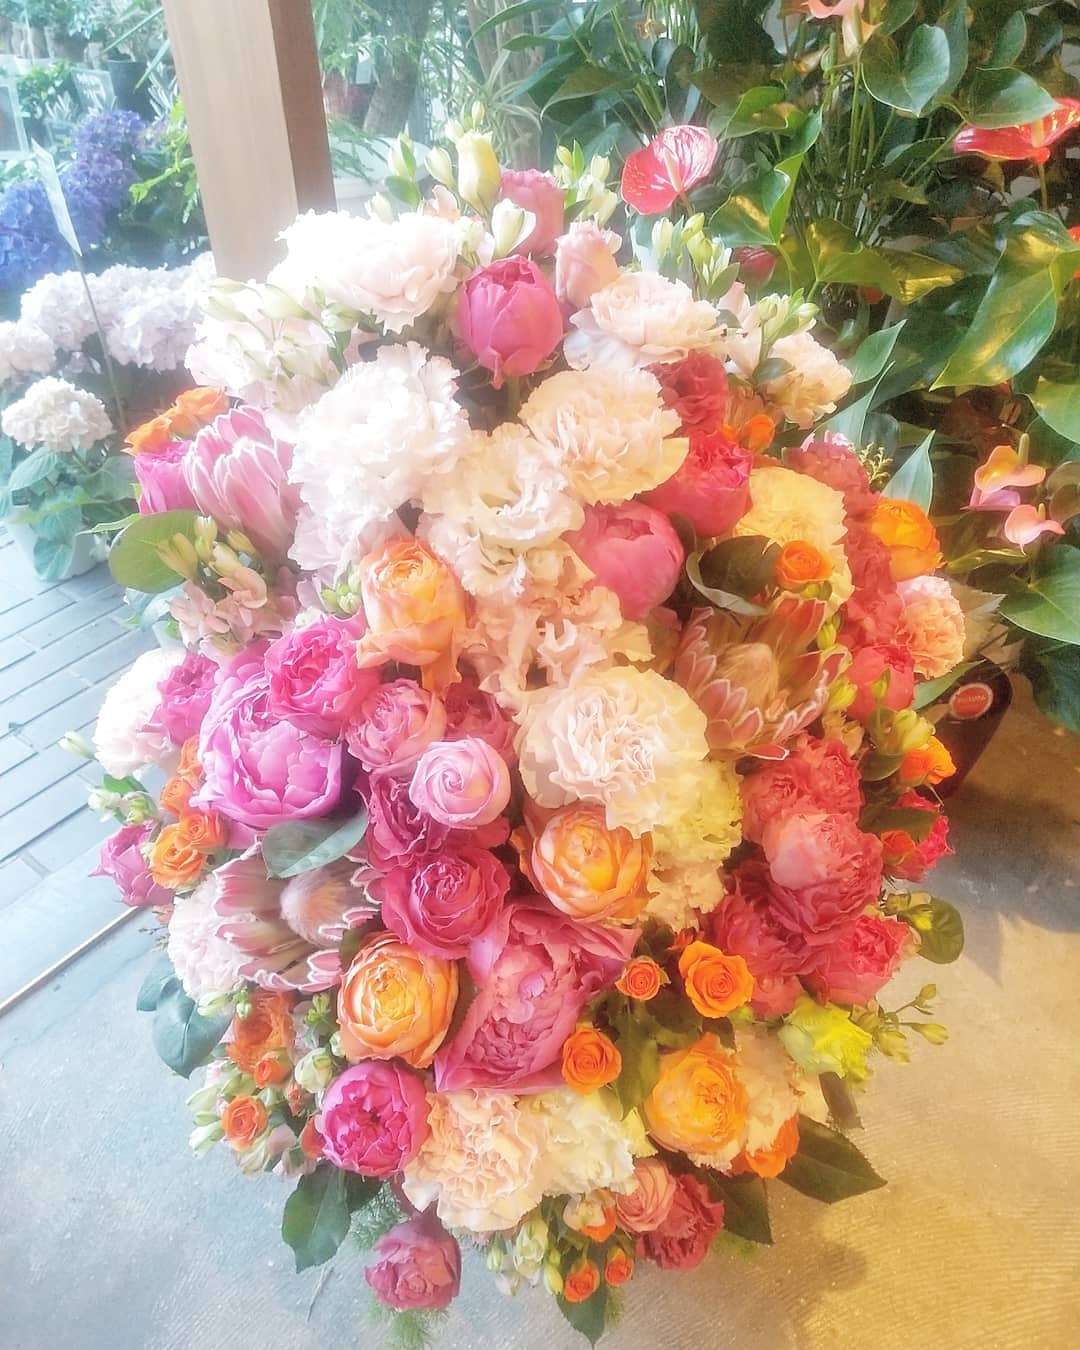 カレー屋さんの開店のお花を頼むなら大阪の旭区にある花屋_結いはなで